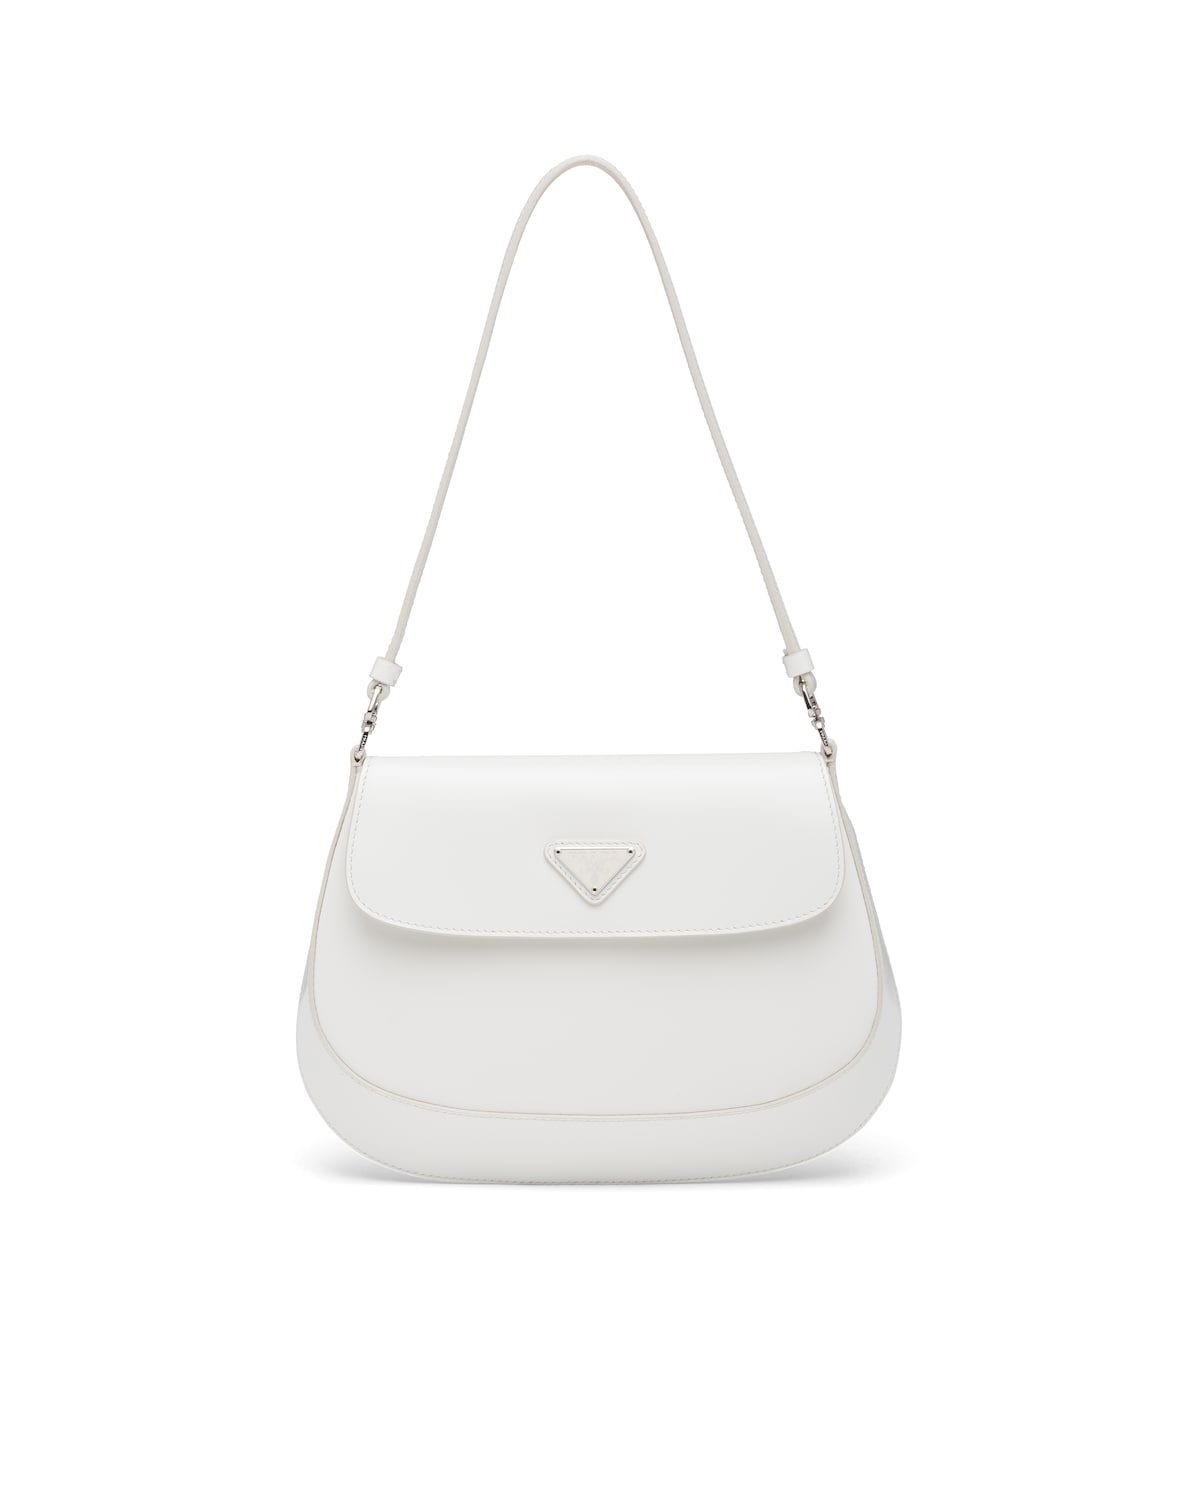 Prada Saffiano Mini Bag Reference Guide - Spotted Fashion